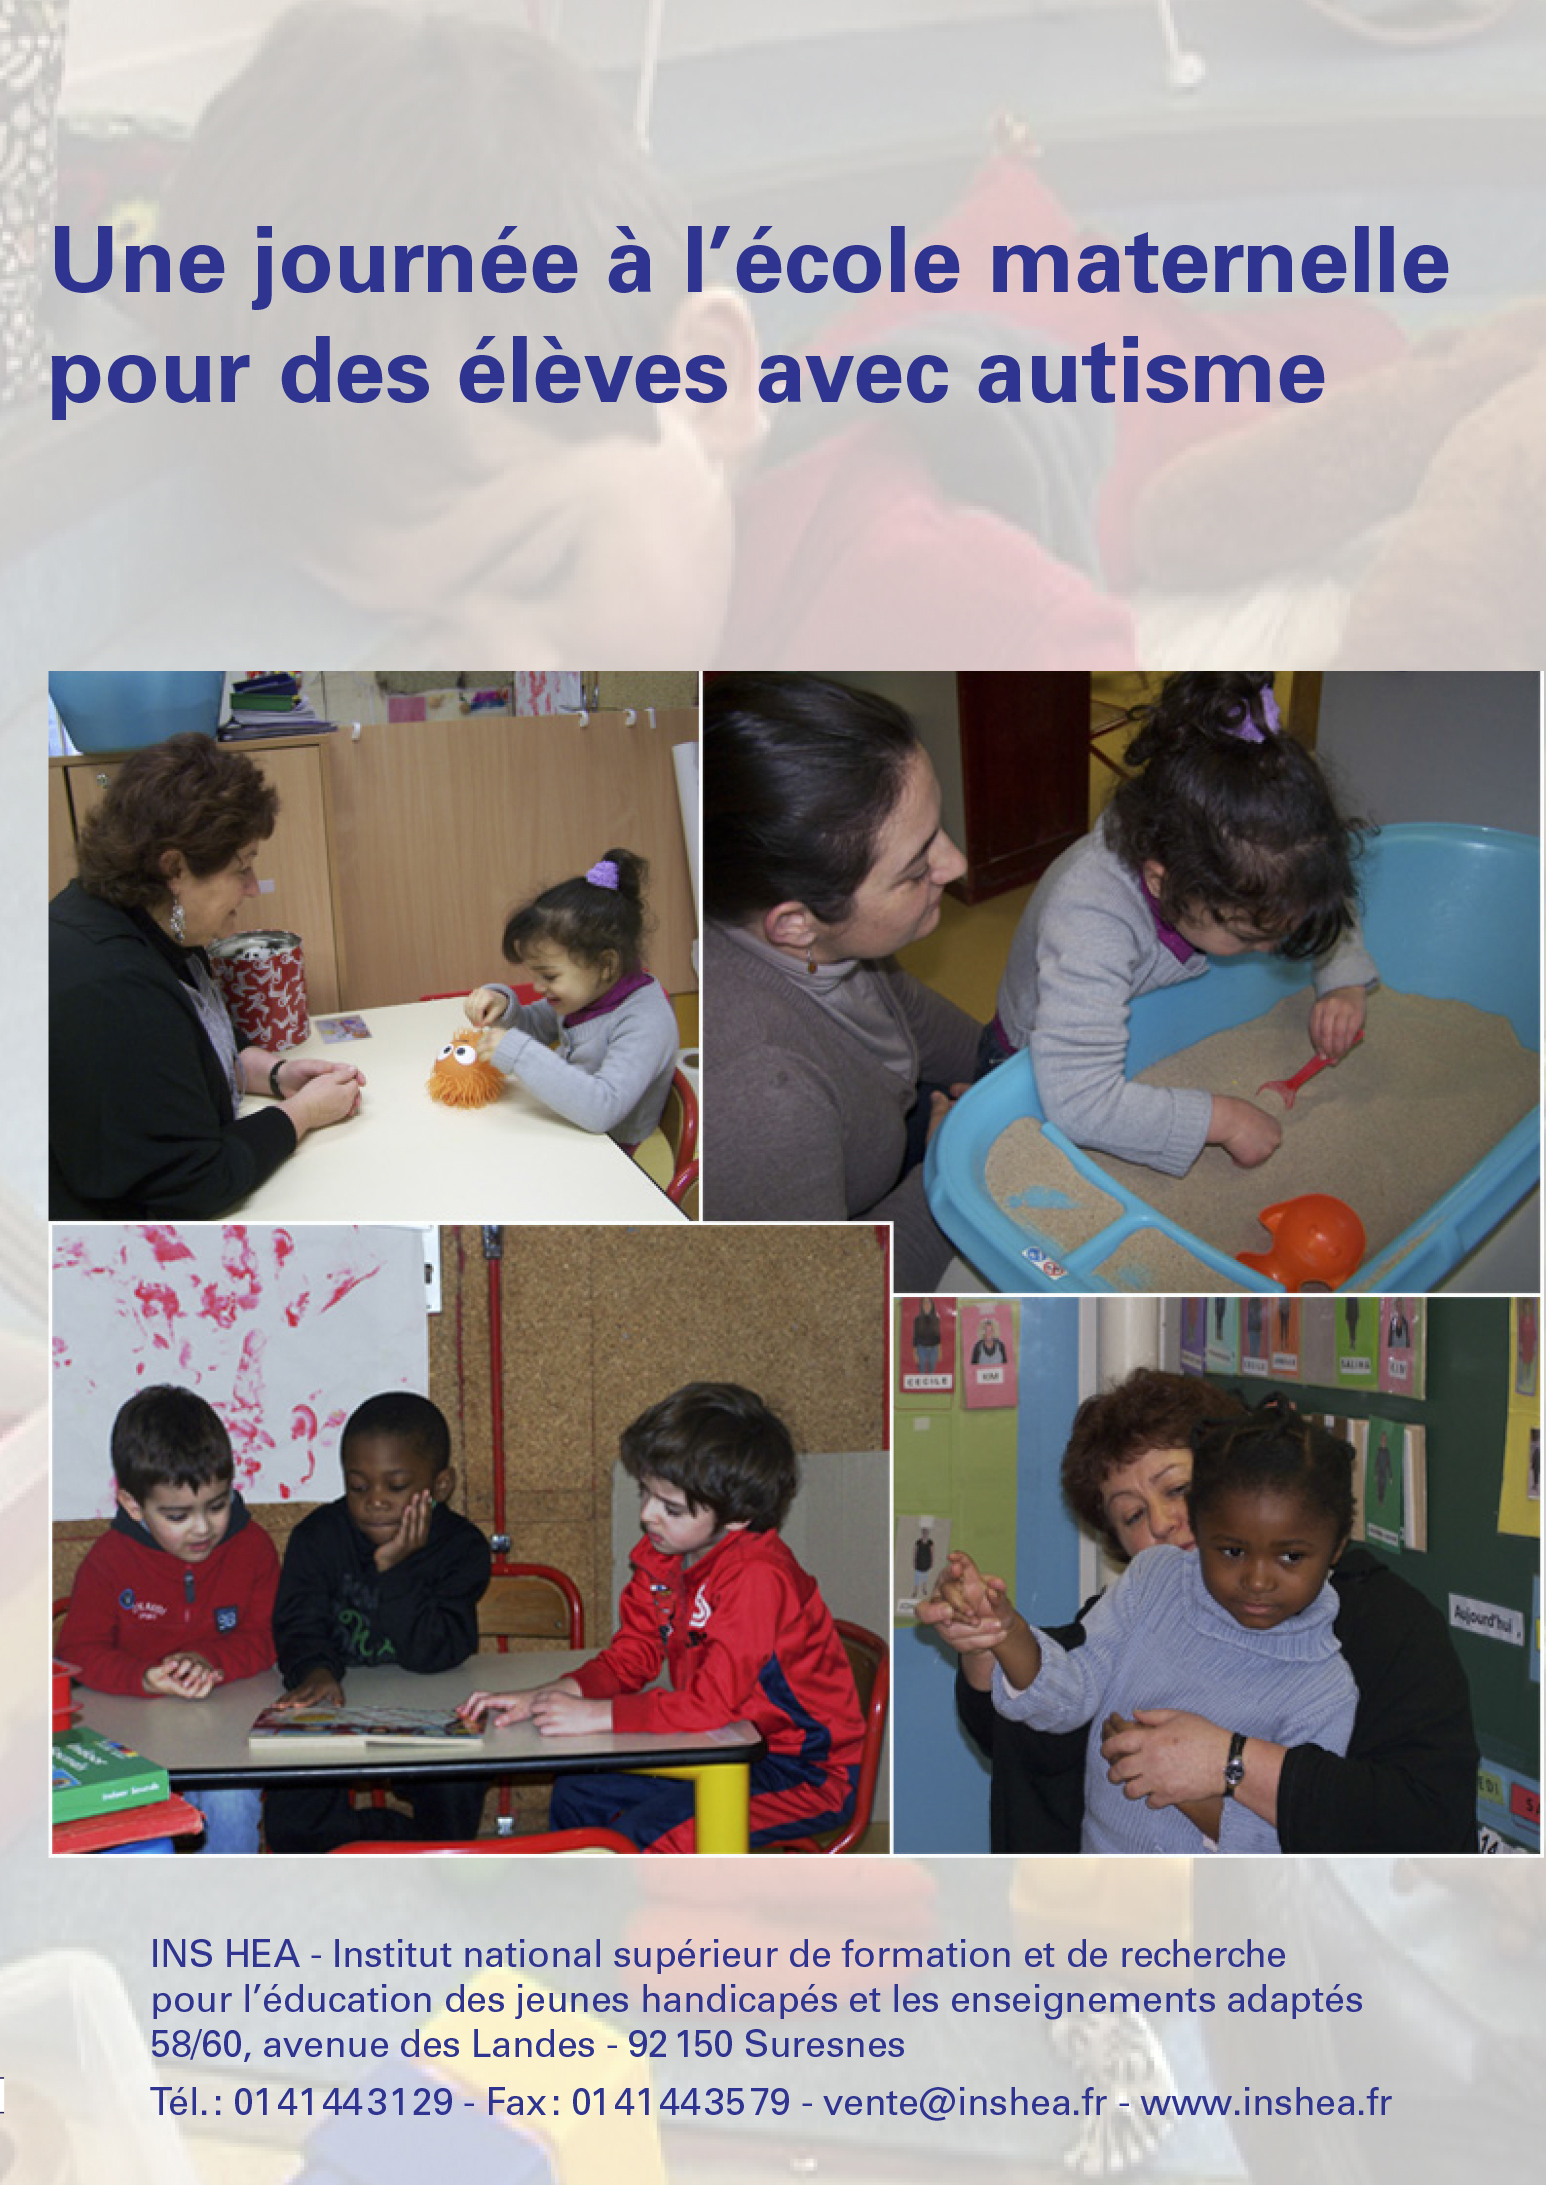 Jaquette du film "Une journée à l'école maternelle pour des élèves avec autisme"